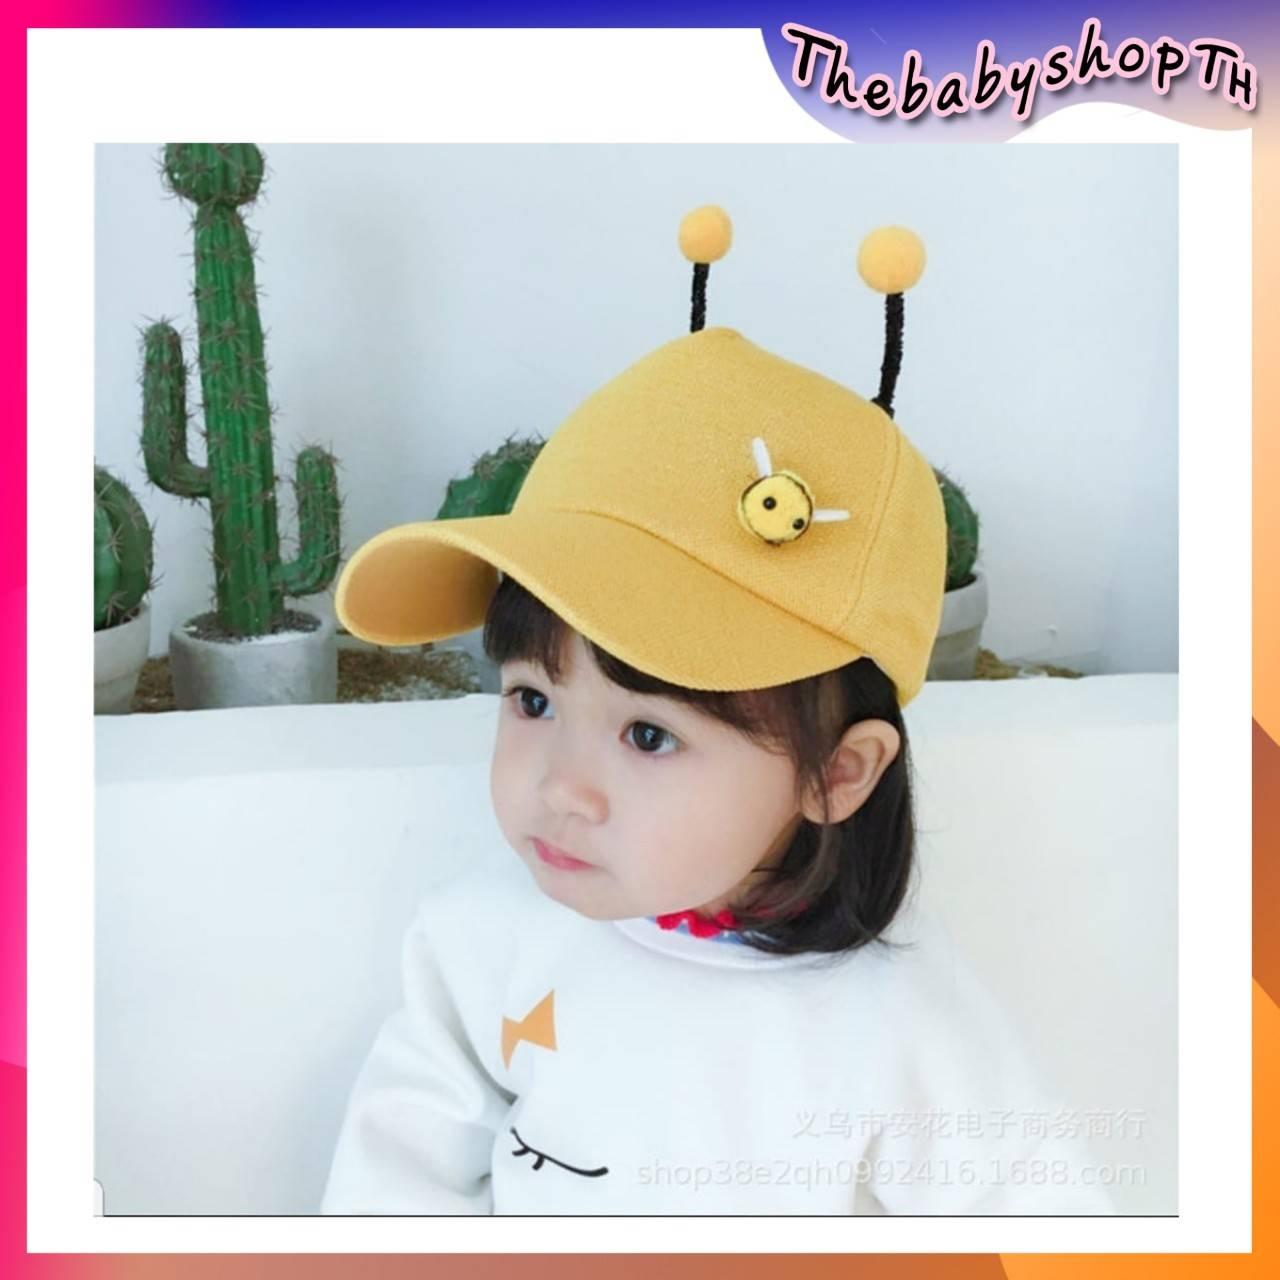 ThebabyshopTH หมวกผึ้งน้อย หมวกเด็ก หมวกแก๊ปเด็ก มีหนวดด้านบนคล้ายหนวดผึ้ง น่ารักมาก